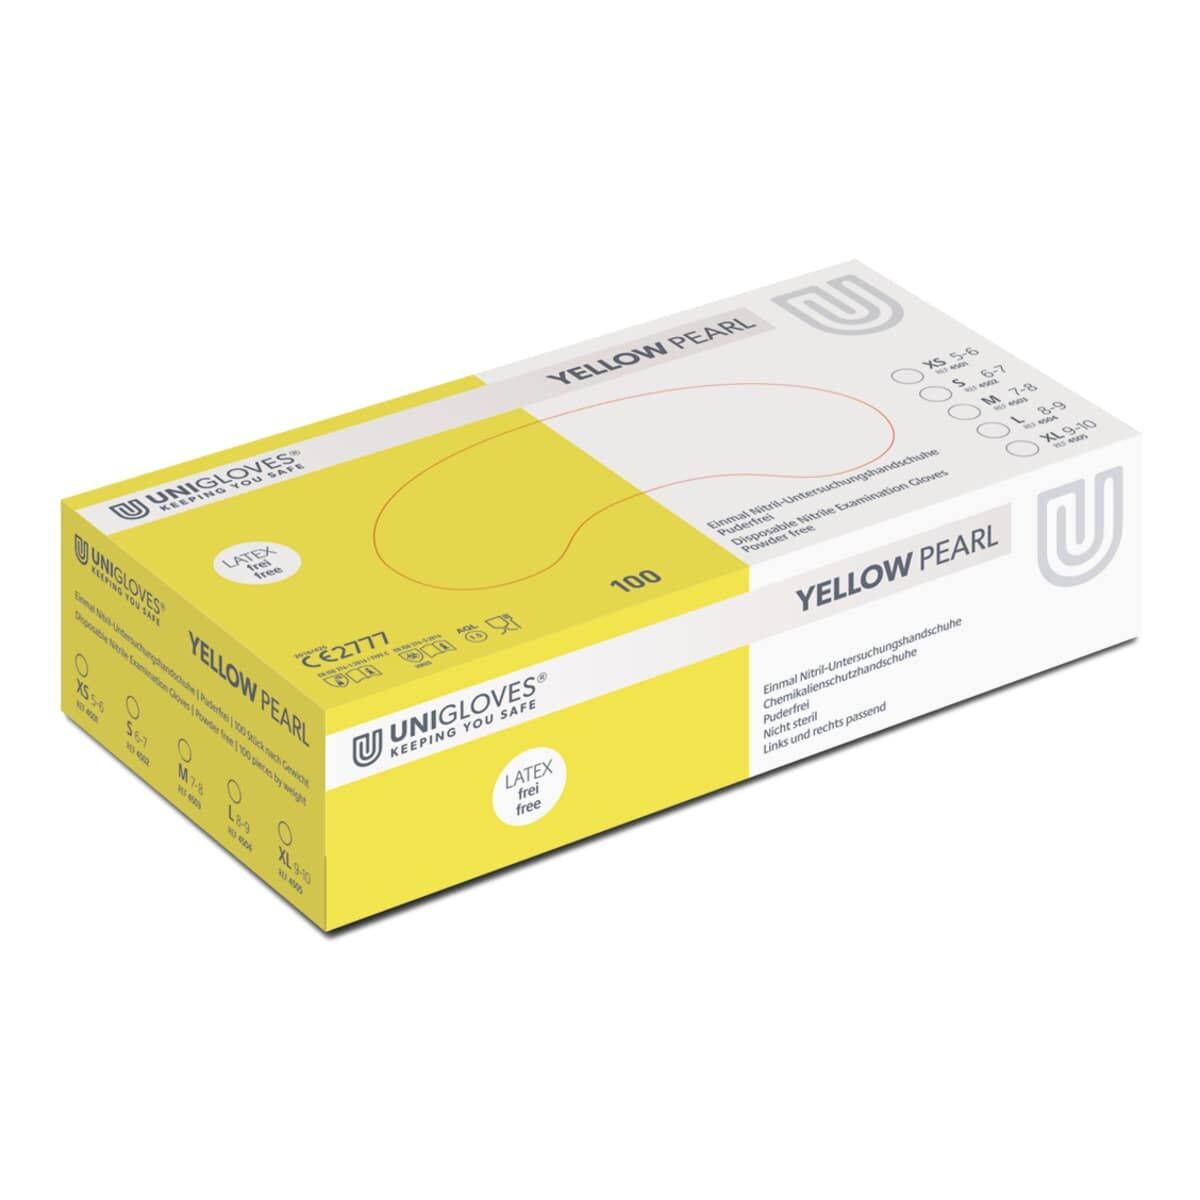 Produktverpackung der Yellow Pearl Nitrilhandschuhe von Unigloves